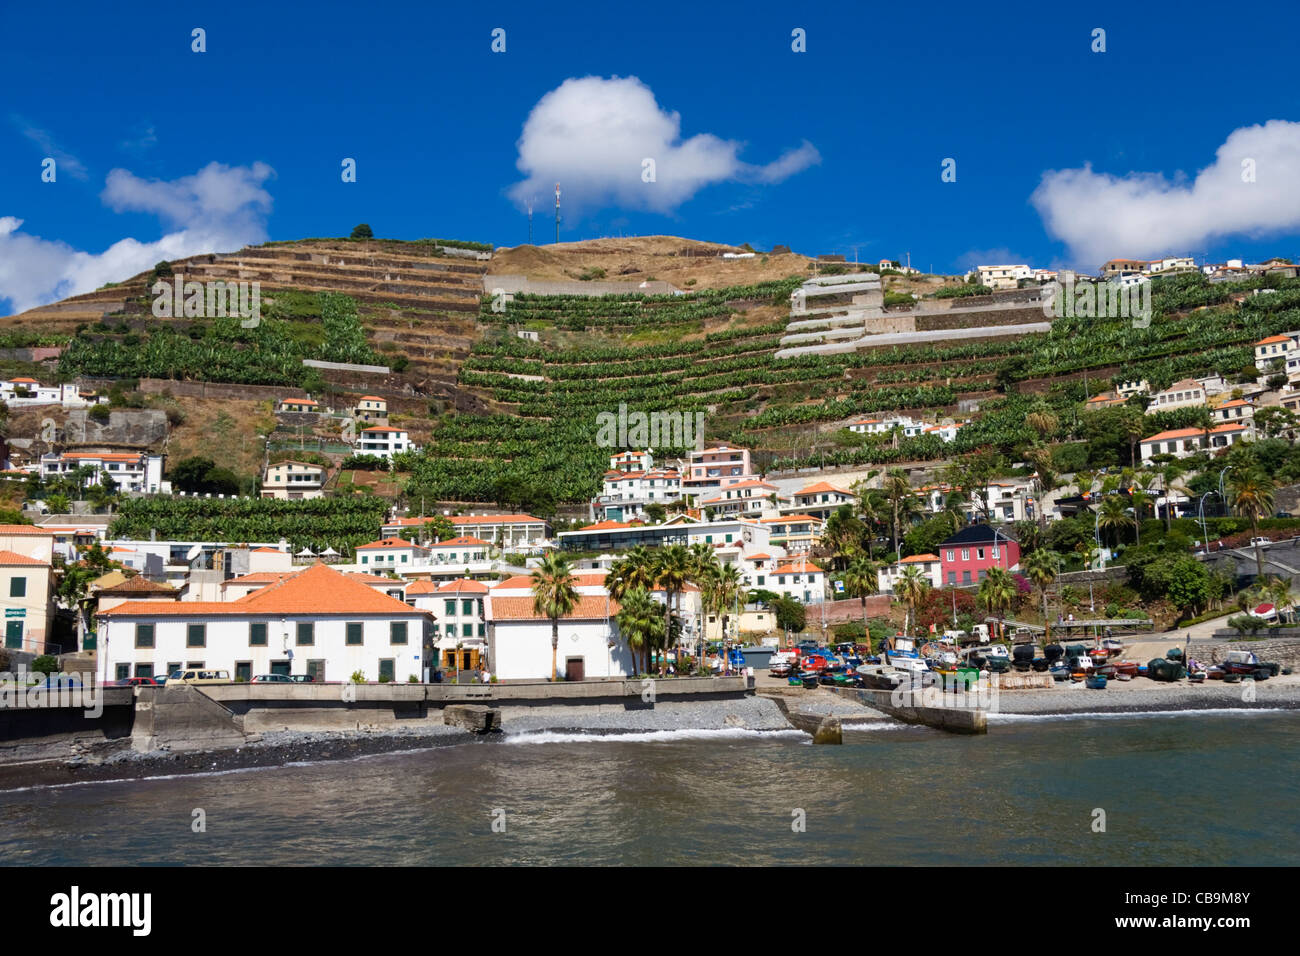 Camara de Lobos, near Funchal, Madeira Stock Photo